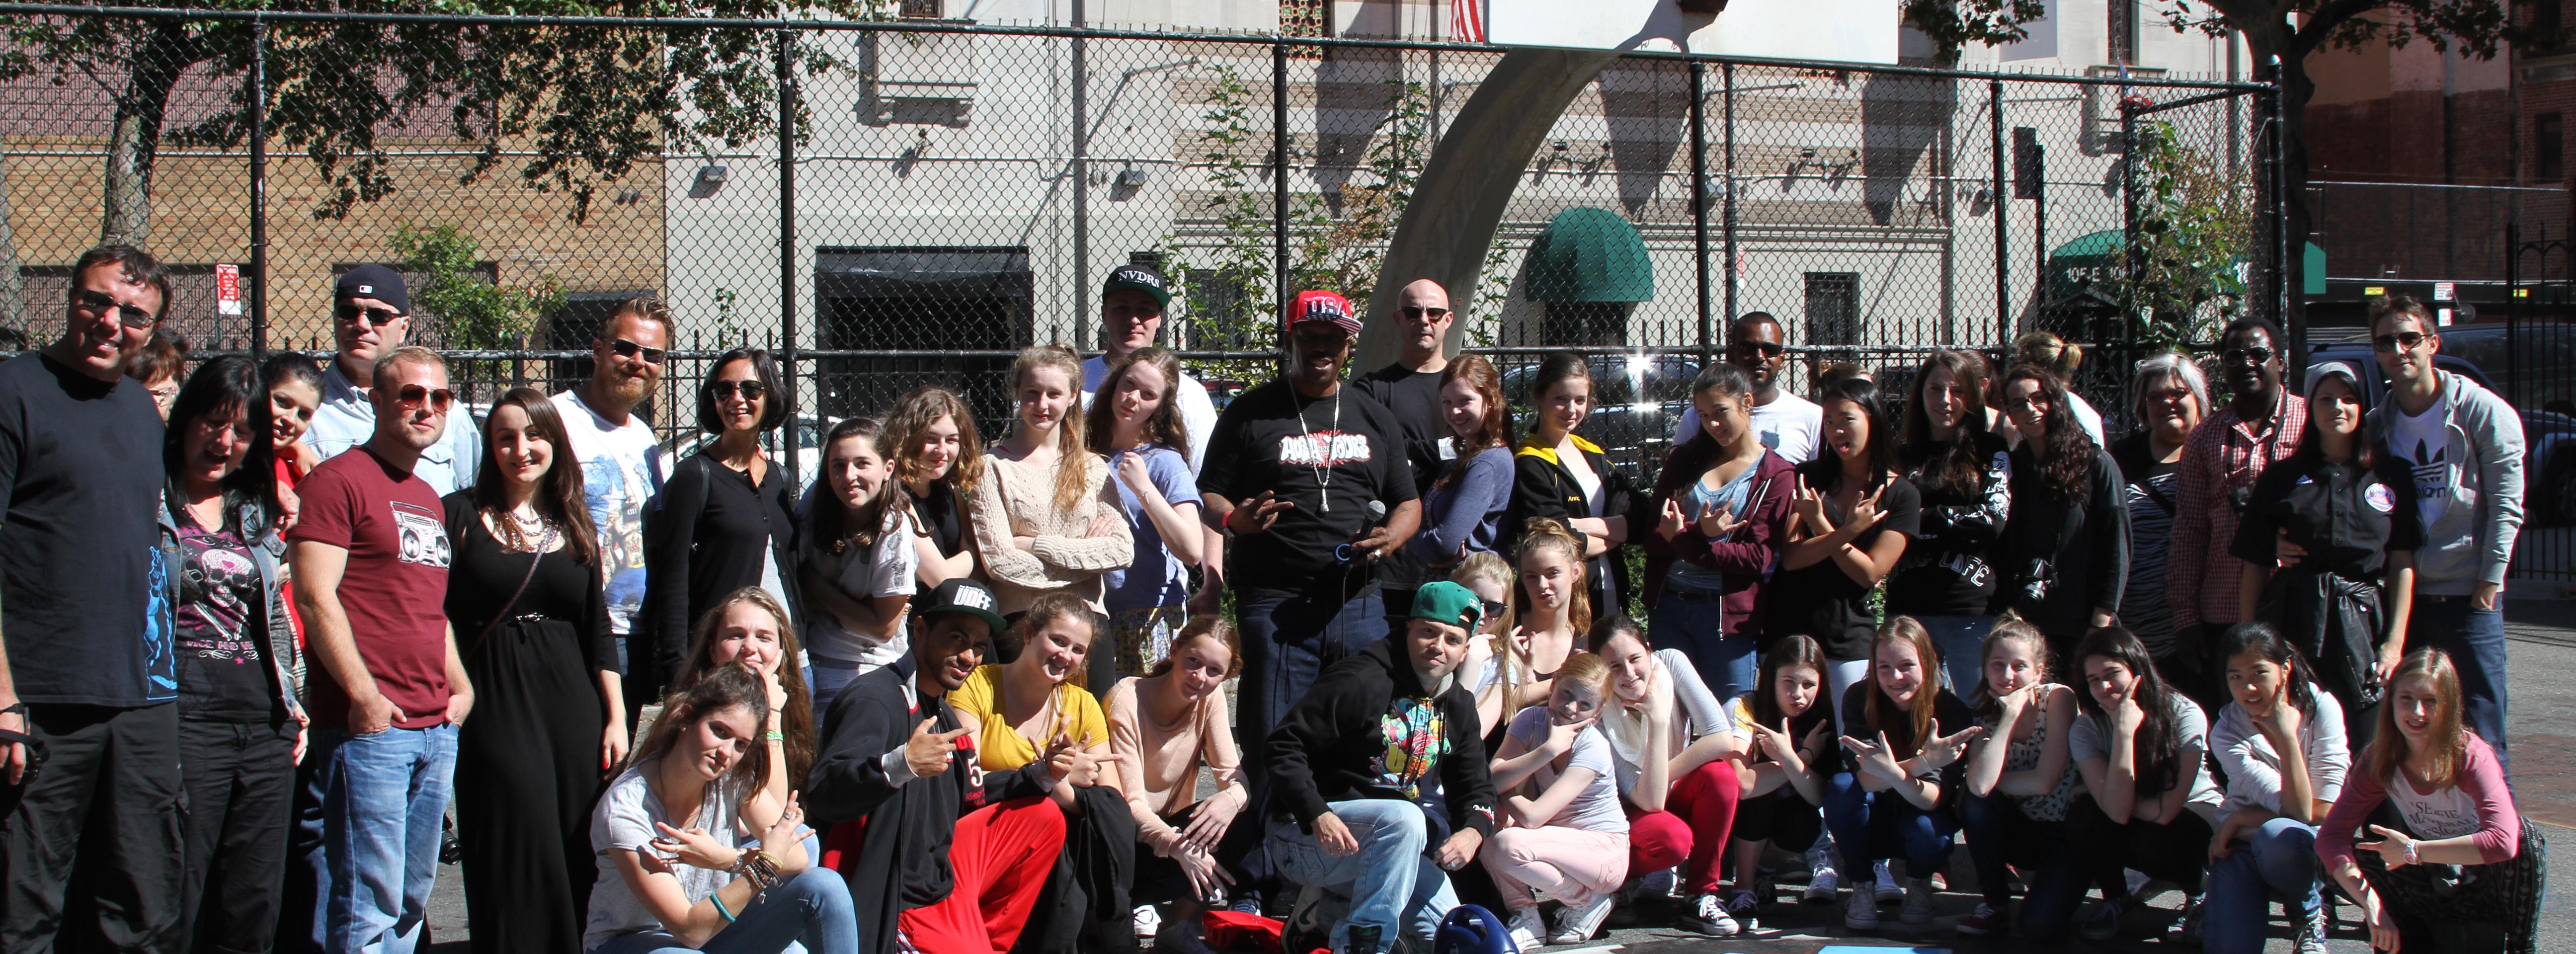 La scoperta della cultura Hip Hop - Tour in bus del Bronx e Harlem